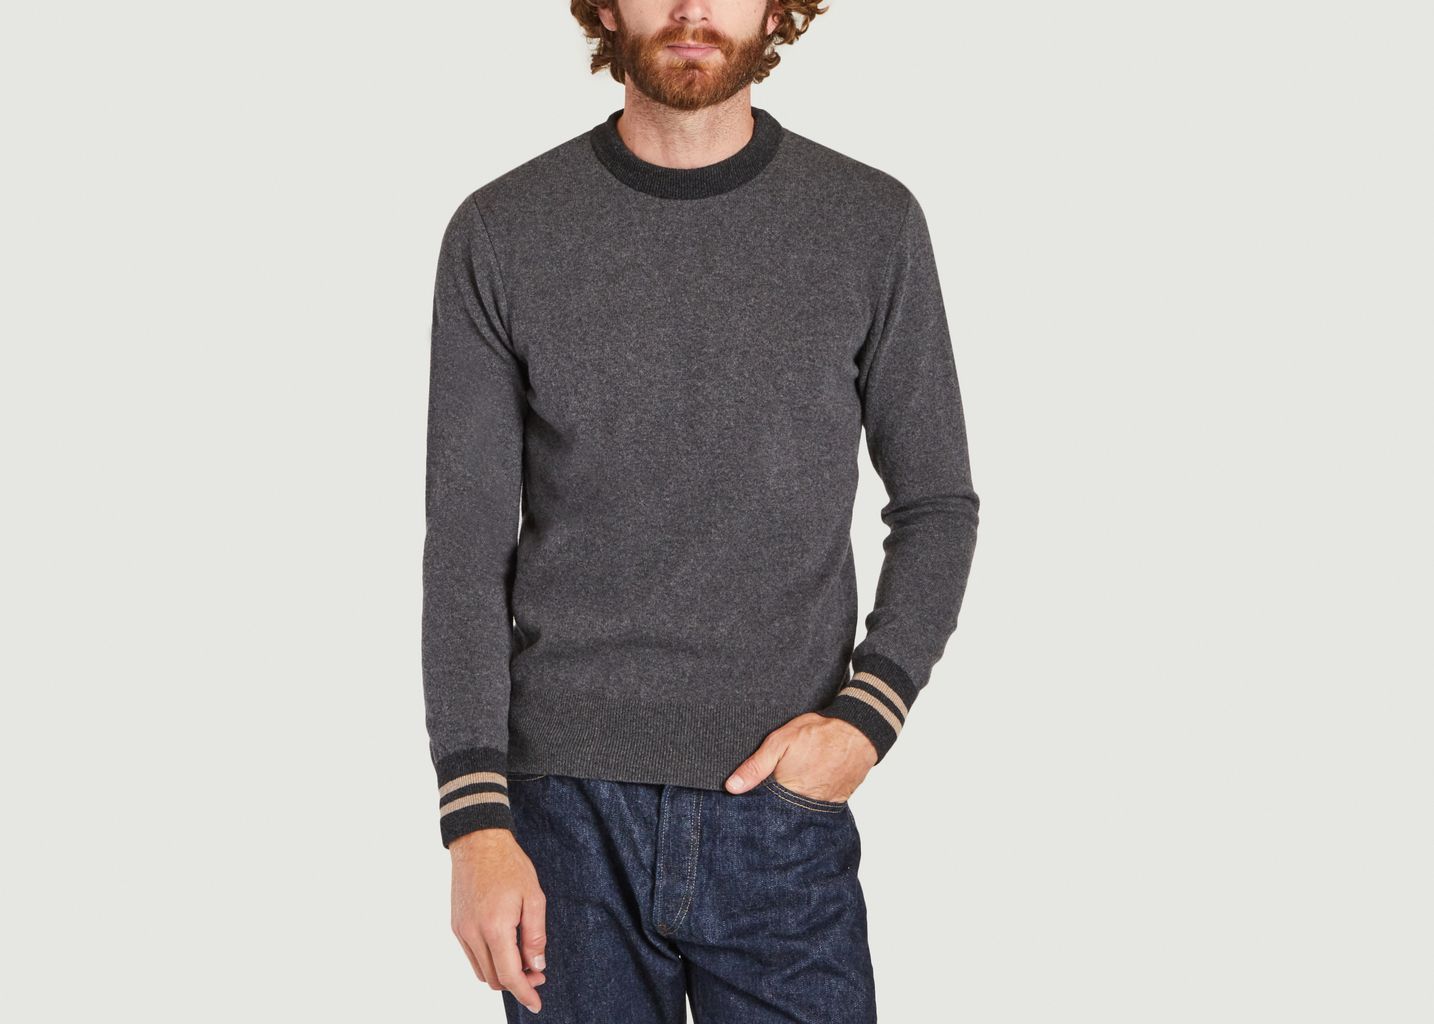 Blenheim wool sweater - Oliver Spencer